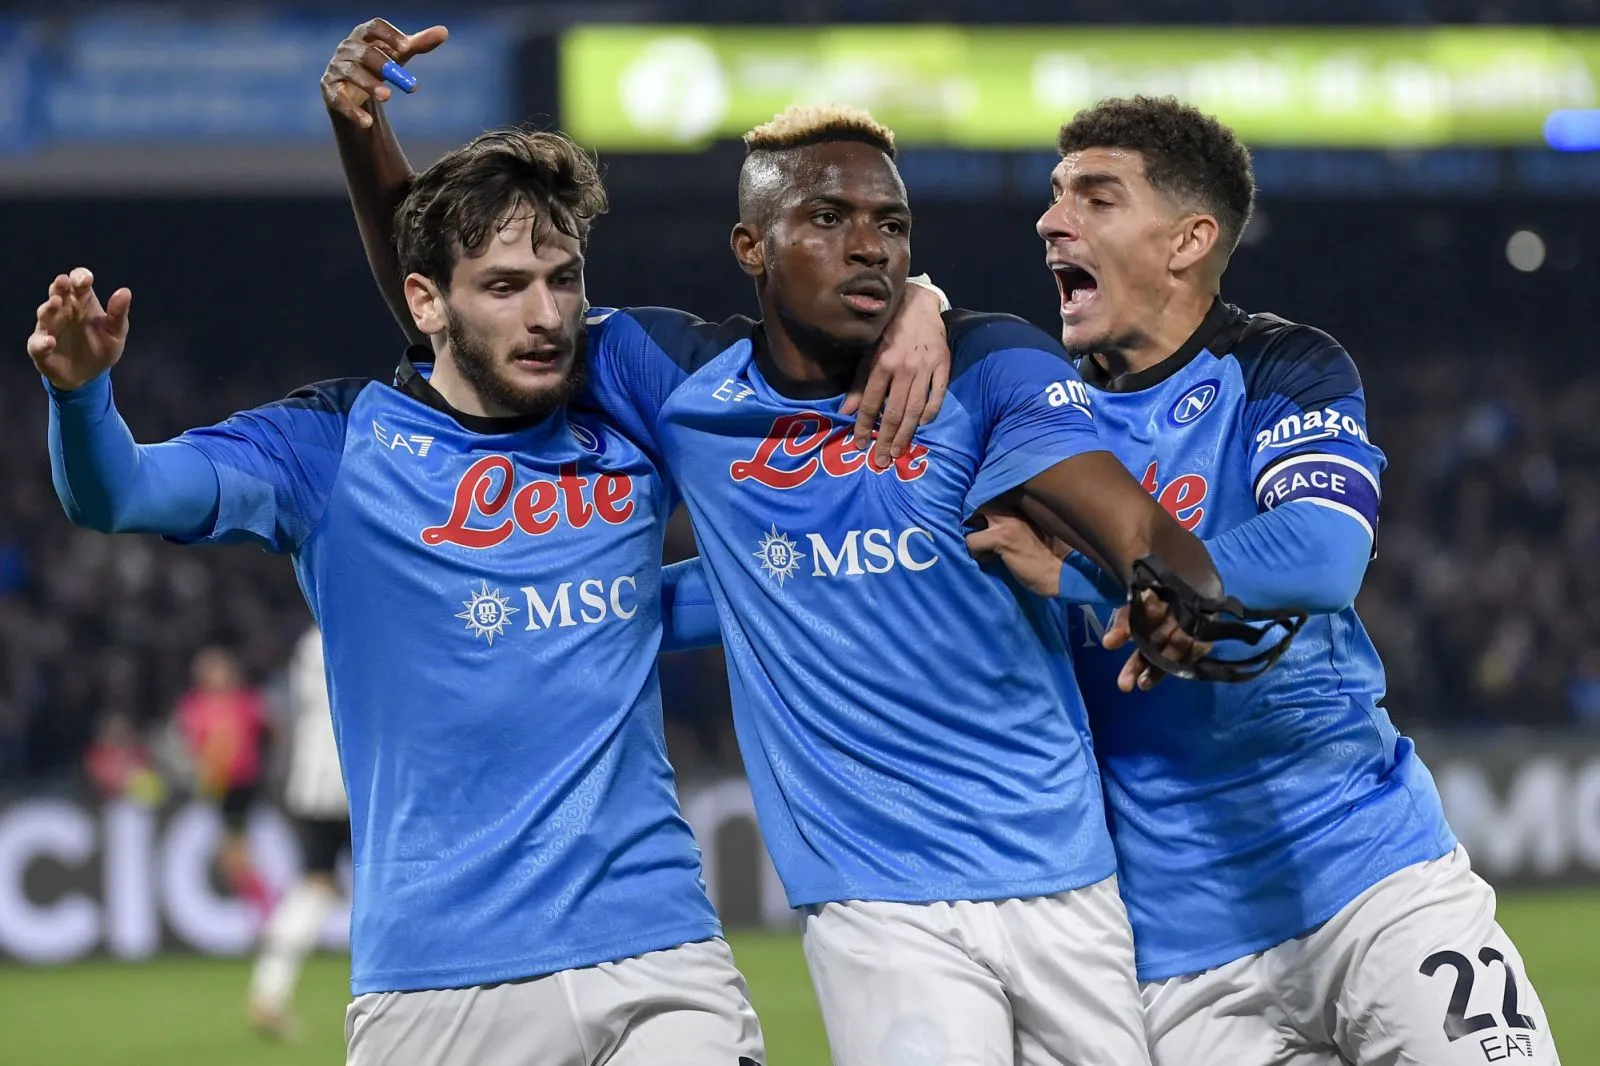 Pronostic Napoli Eintracht Francfort : Analyse, cotes et prono du match de Ligue des champions